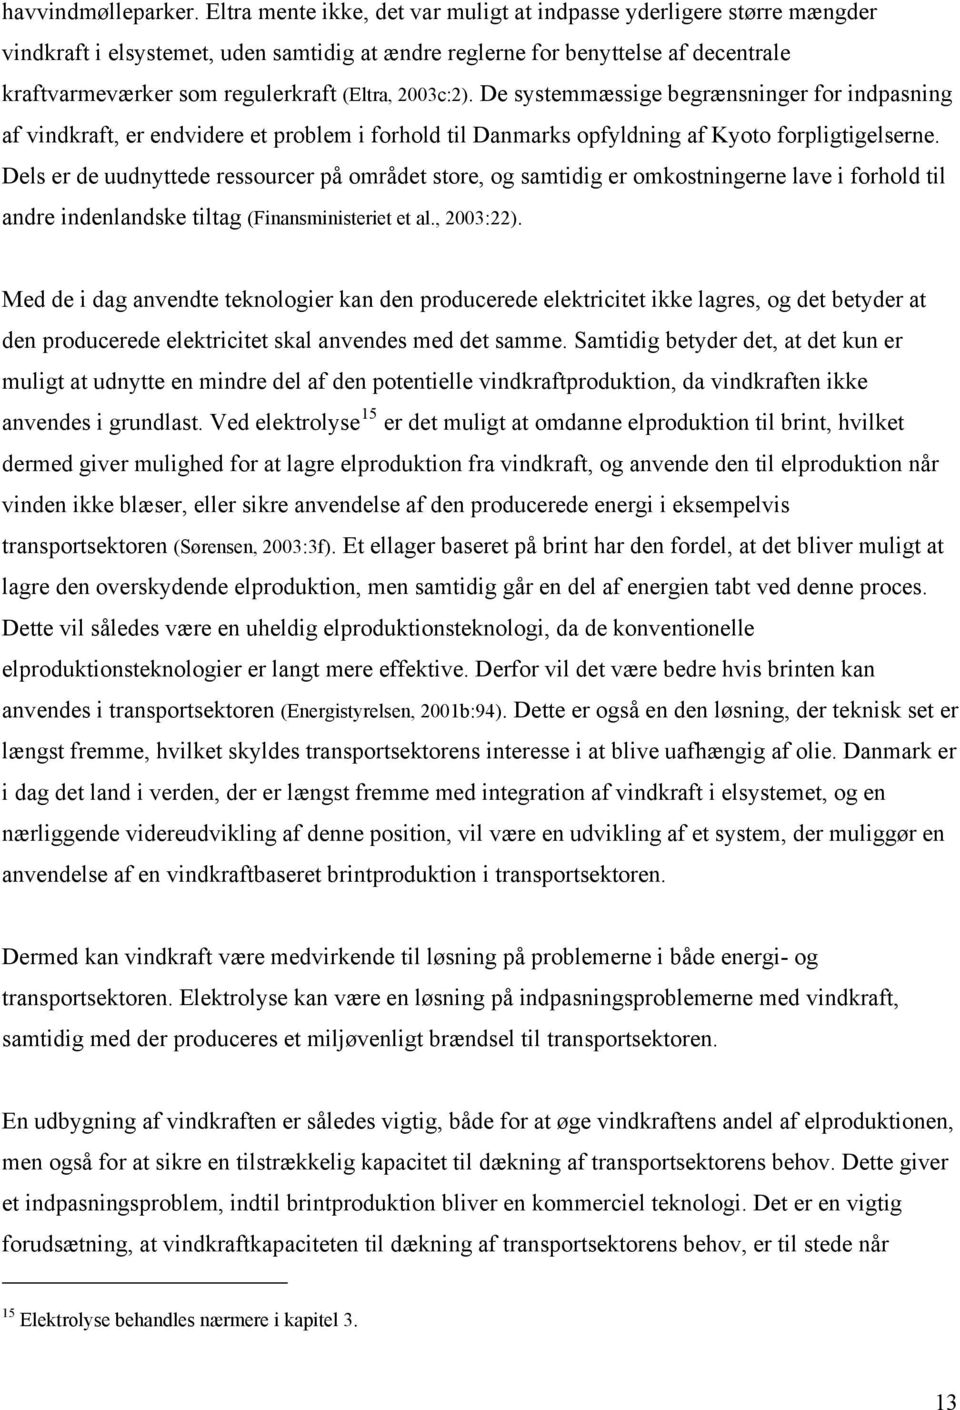 2003c:2). De systemmæssige begrænsninger for indpasning af vindkraft, er endvidere et problem i forhold til Danmarks opfyldning af Kyoto forpligtigelserne.